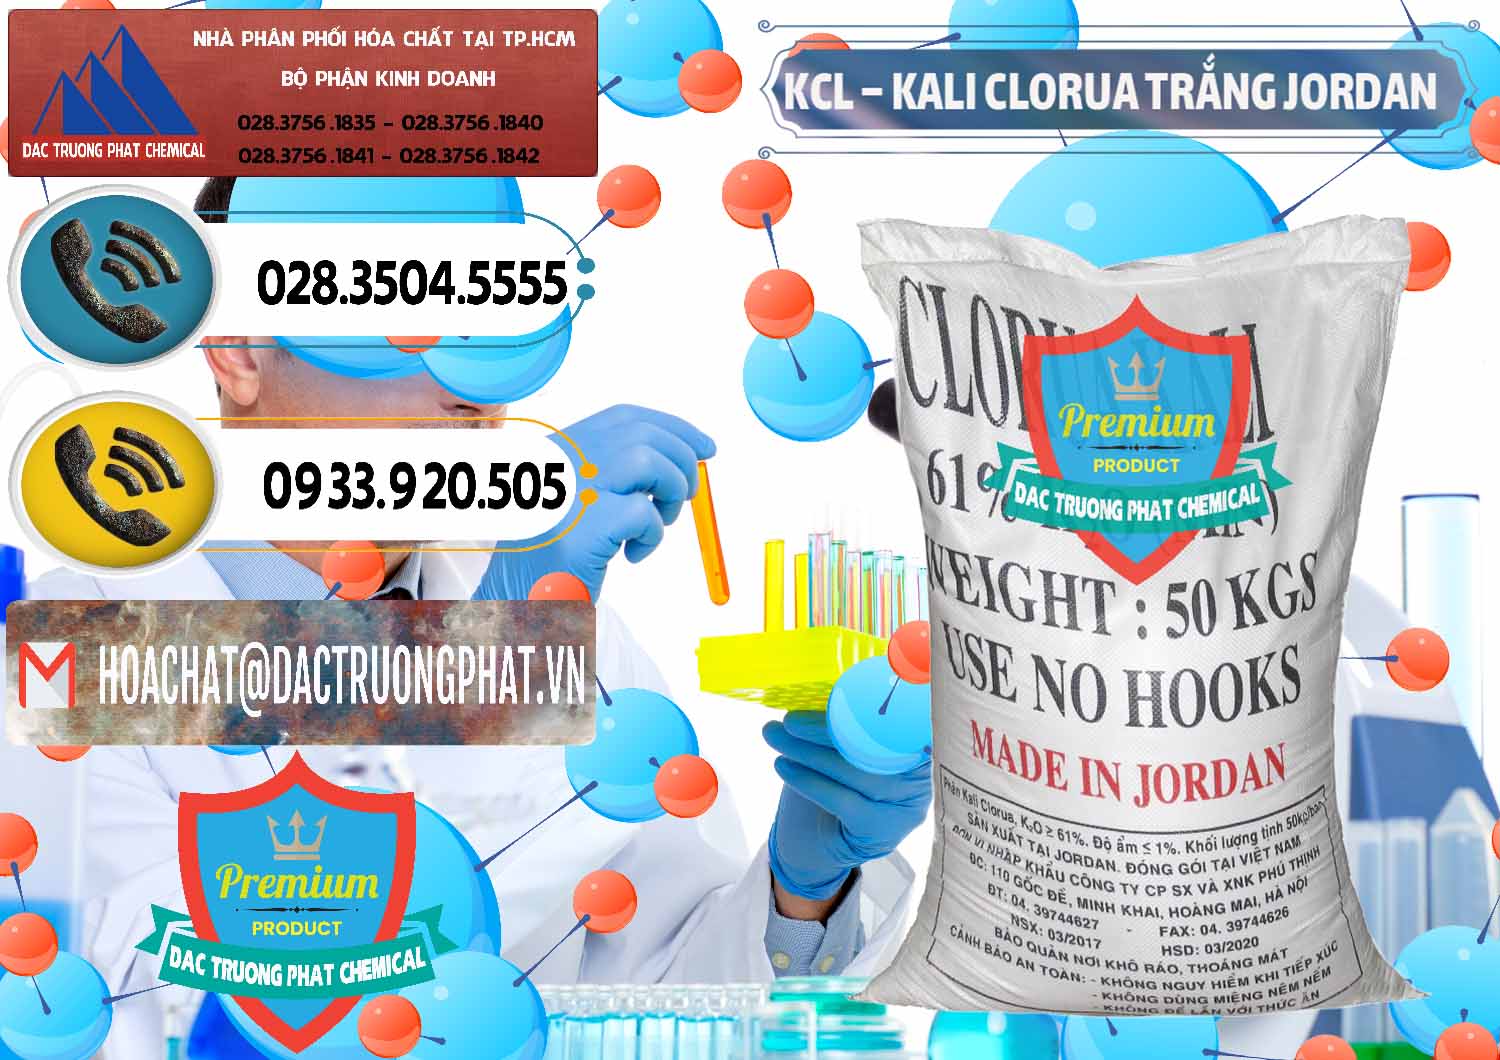 Công ty phân phối ( bán ) KCL – Kali Clorua Trắng Jordan - 0088 - Phân phối - kinh doanh hóa chất tại TP.HCM - hoachatdetnhuom.vn